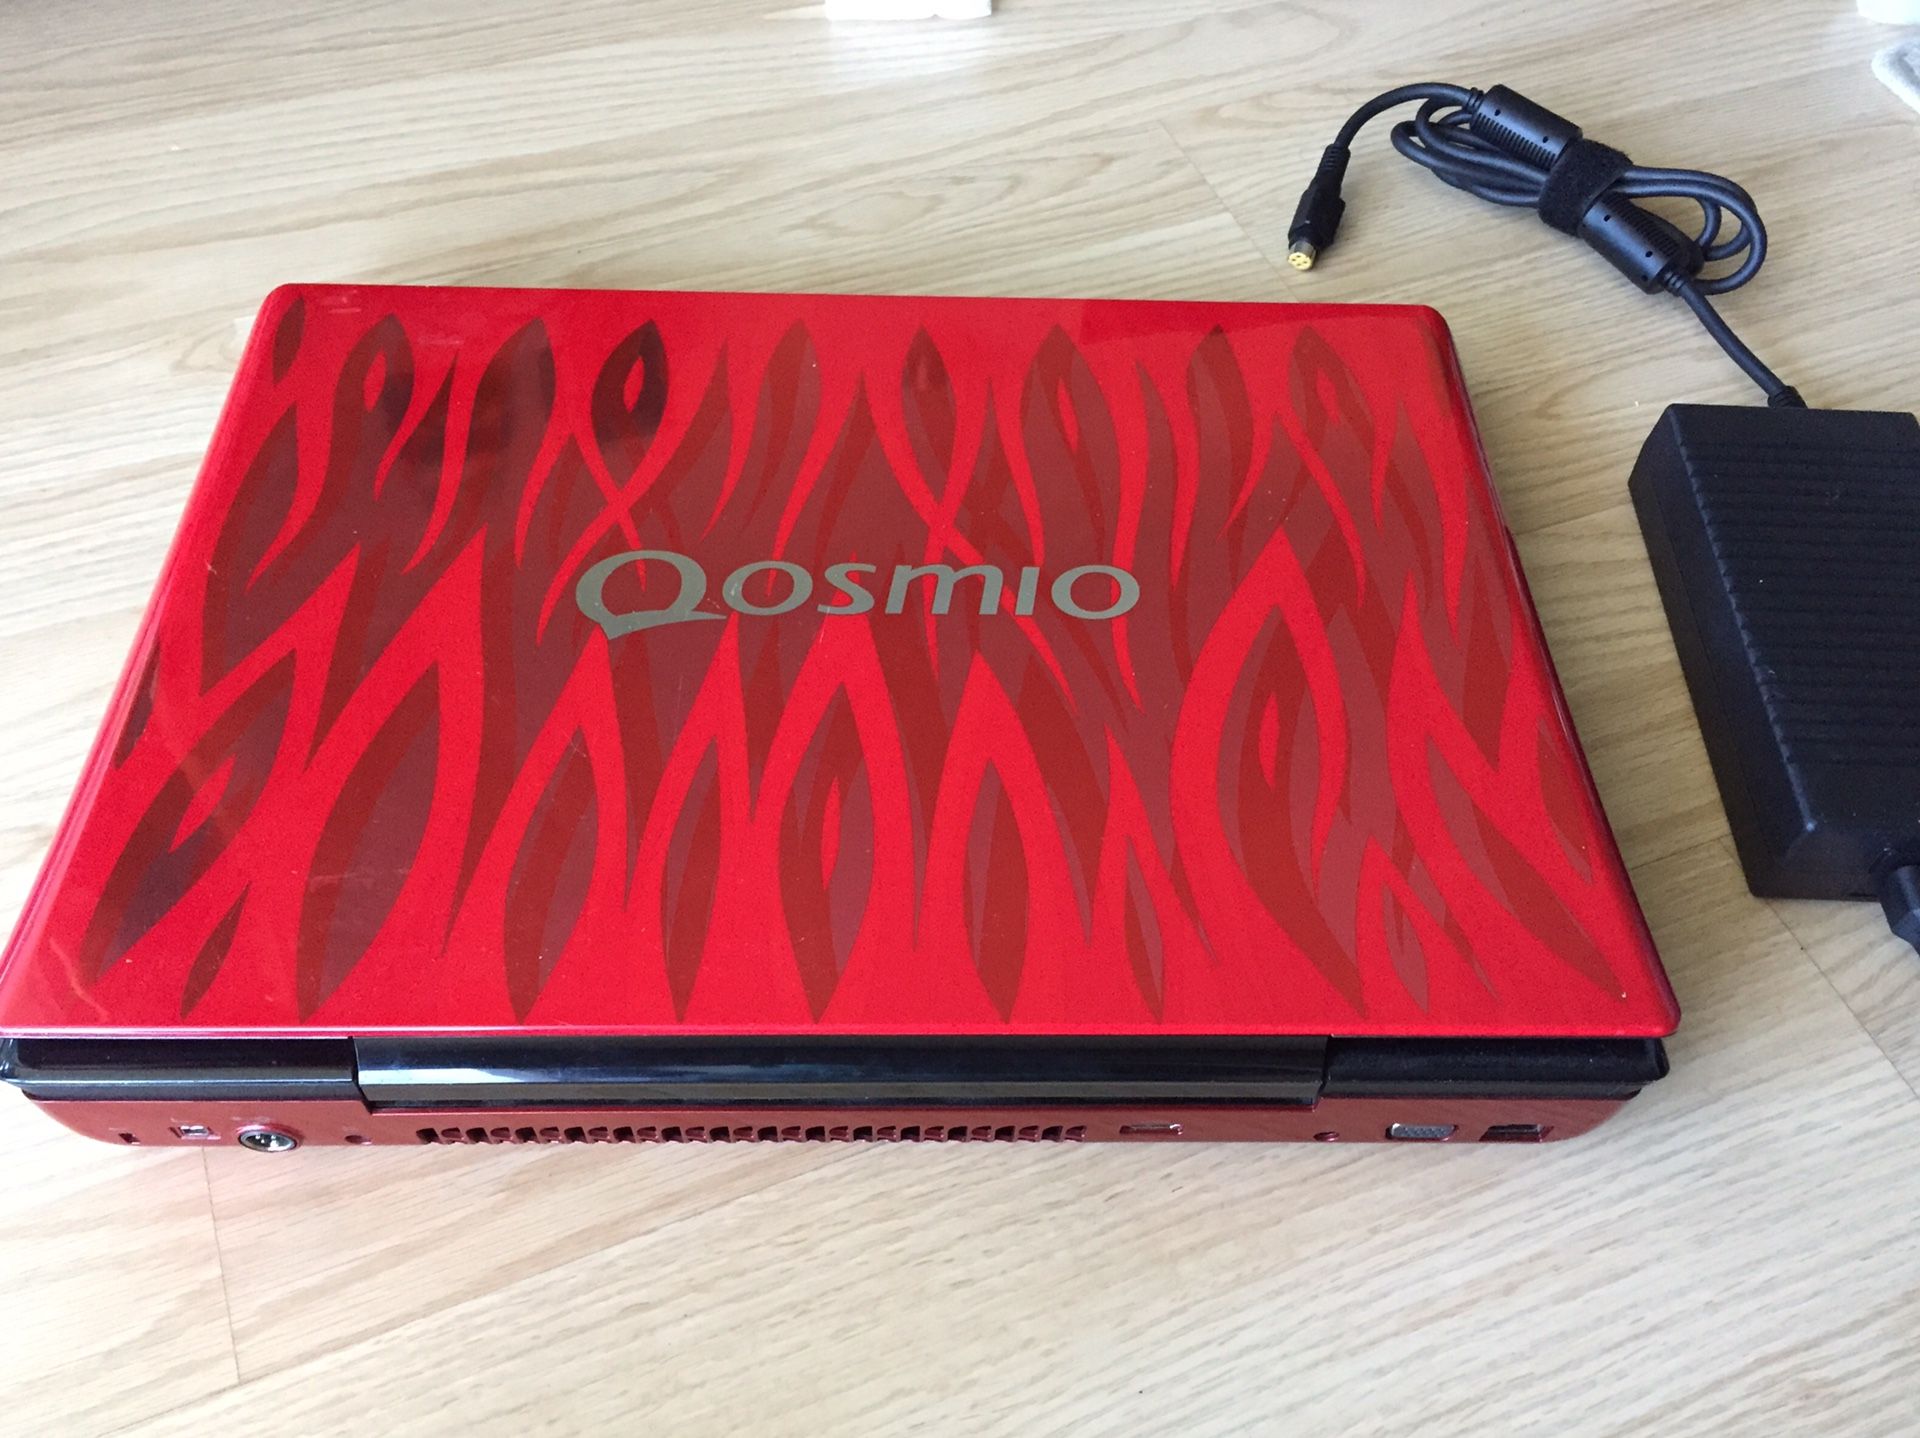 Toshiba Qosmio 17” gaming laptop for parts repair fix